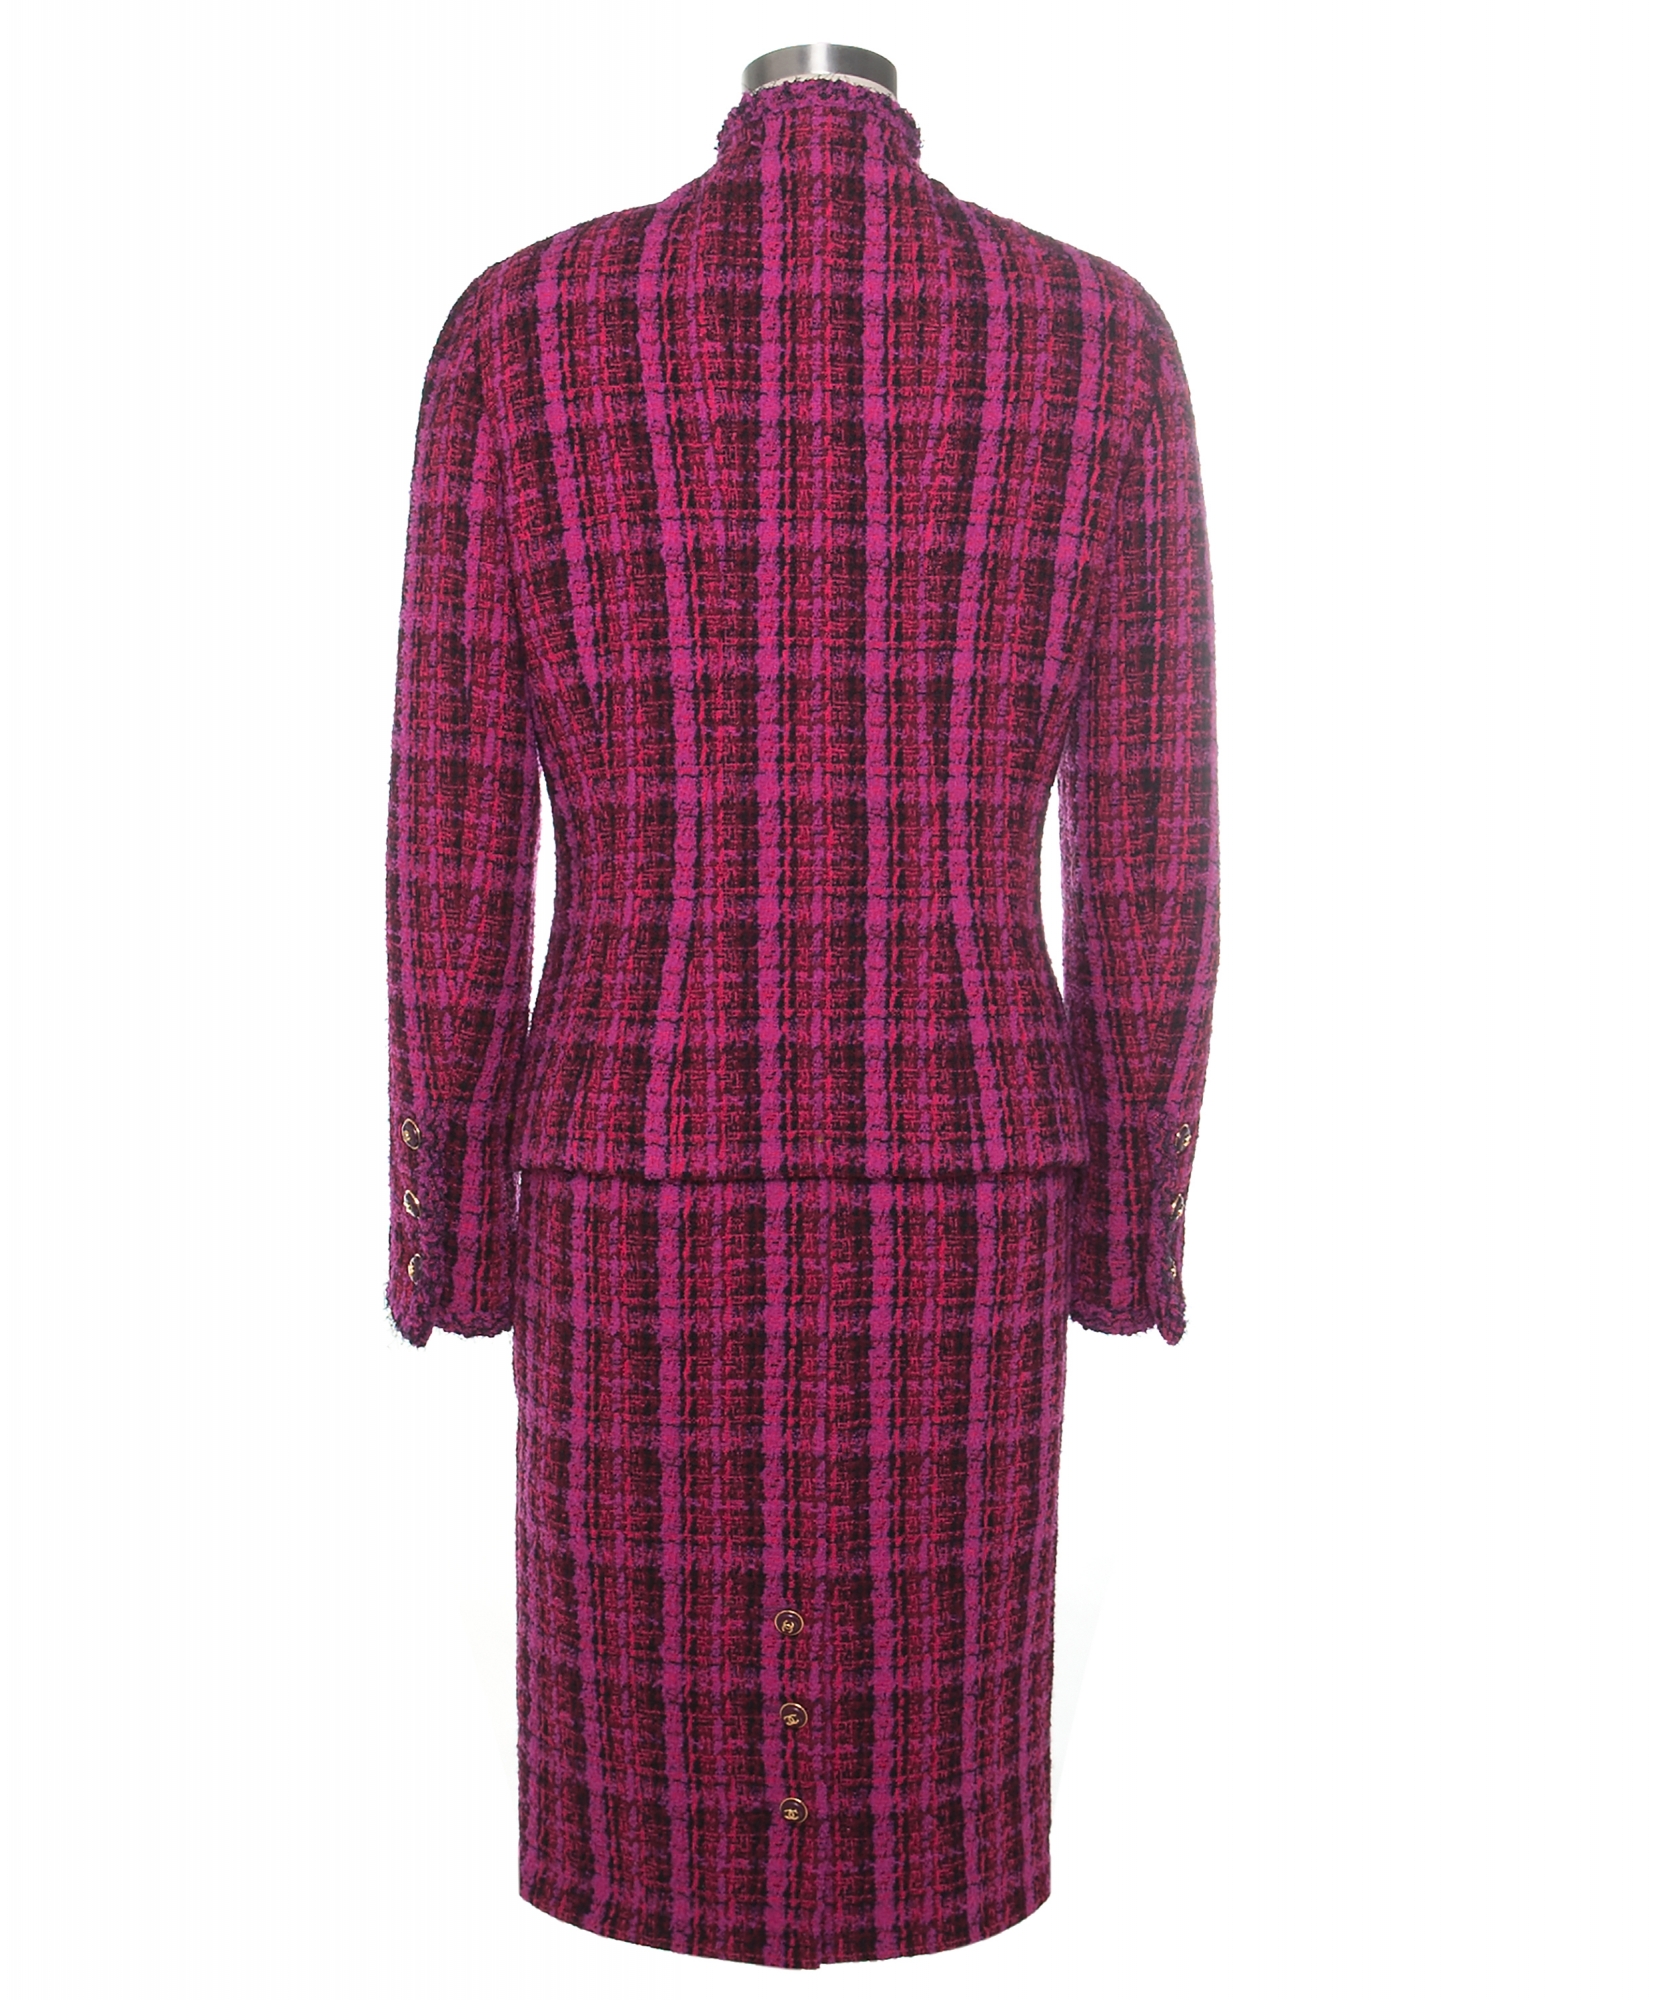 Documented 1995 Chanel Runway Tweed Skirt Suit - Chanel | La Doyenne